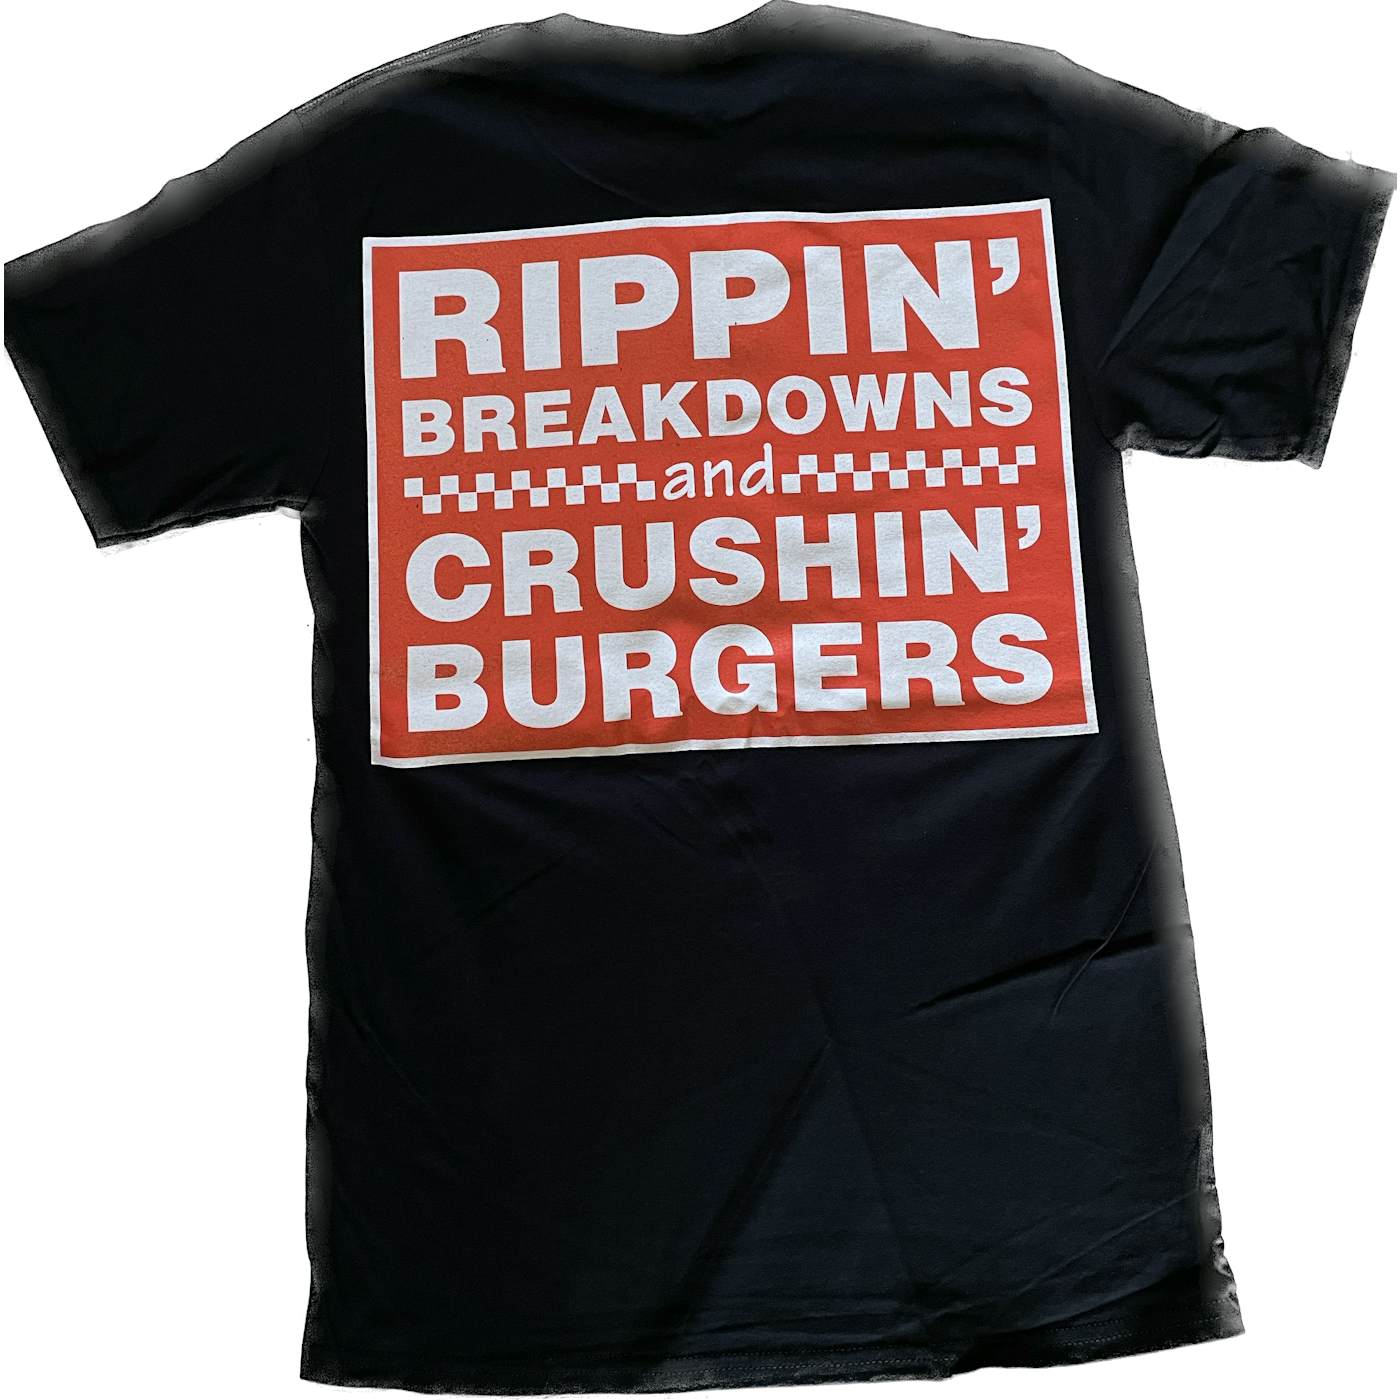 Bodysnatcher 5 Guys Burgers T-Shirt